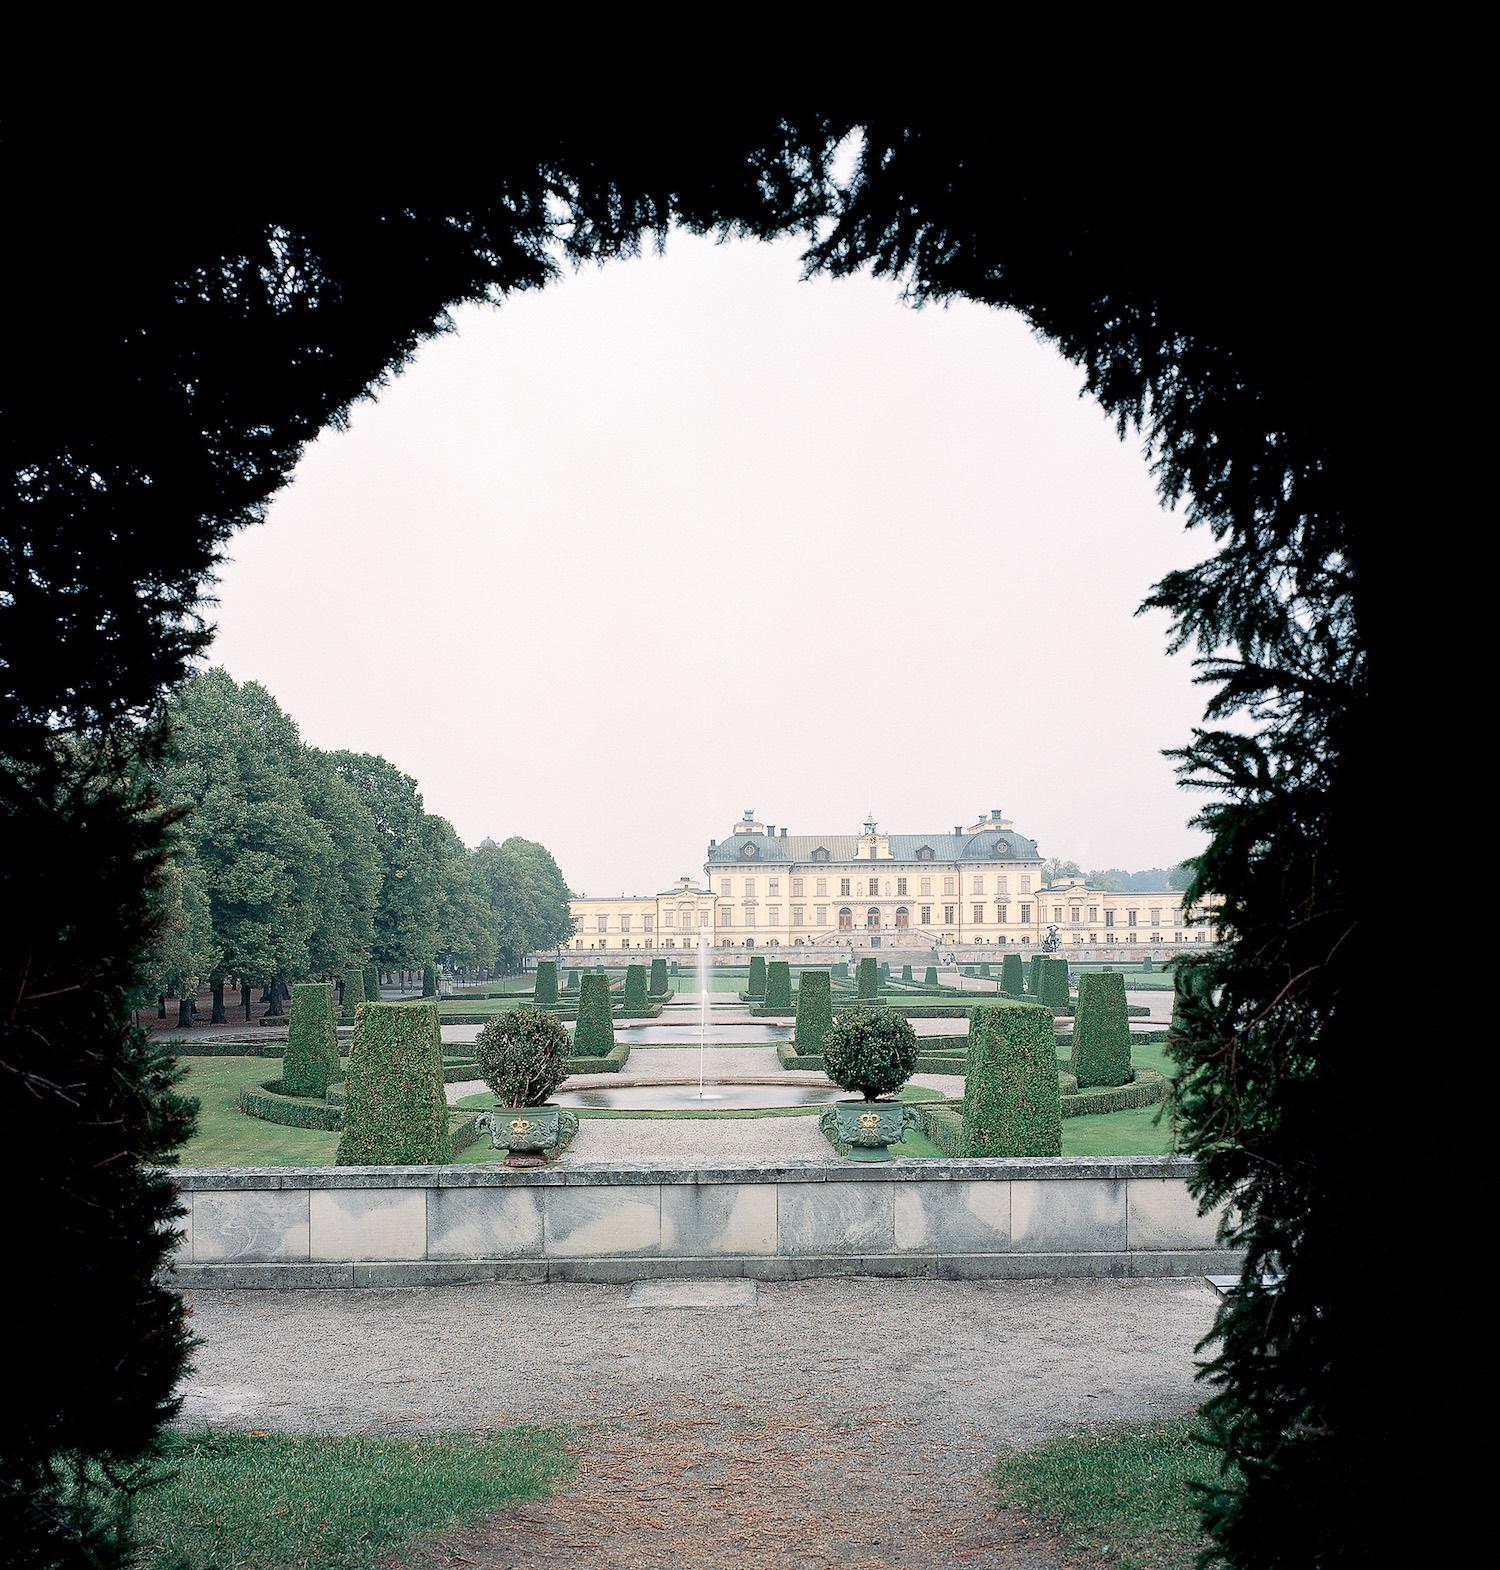 Vue du château derrière le jardin baroque depuis le labyrinthe de haies. - © Åke Eson Lindman